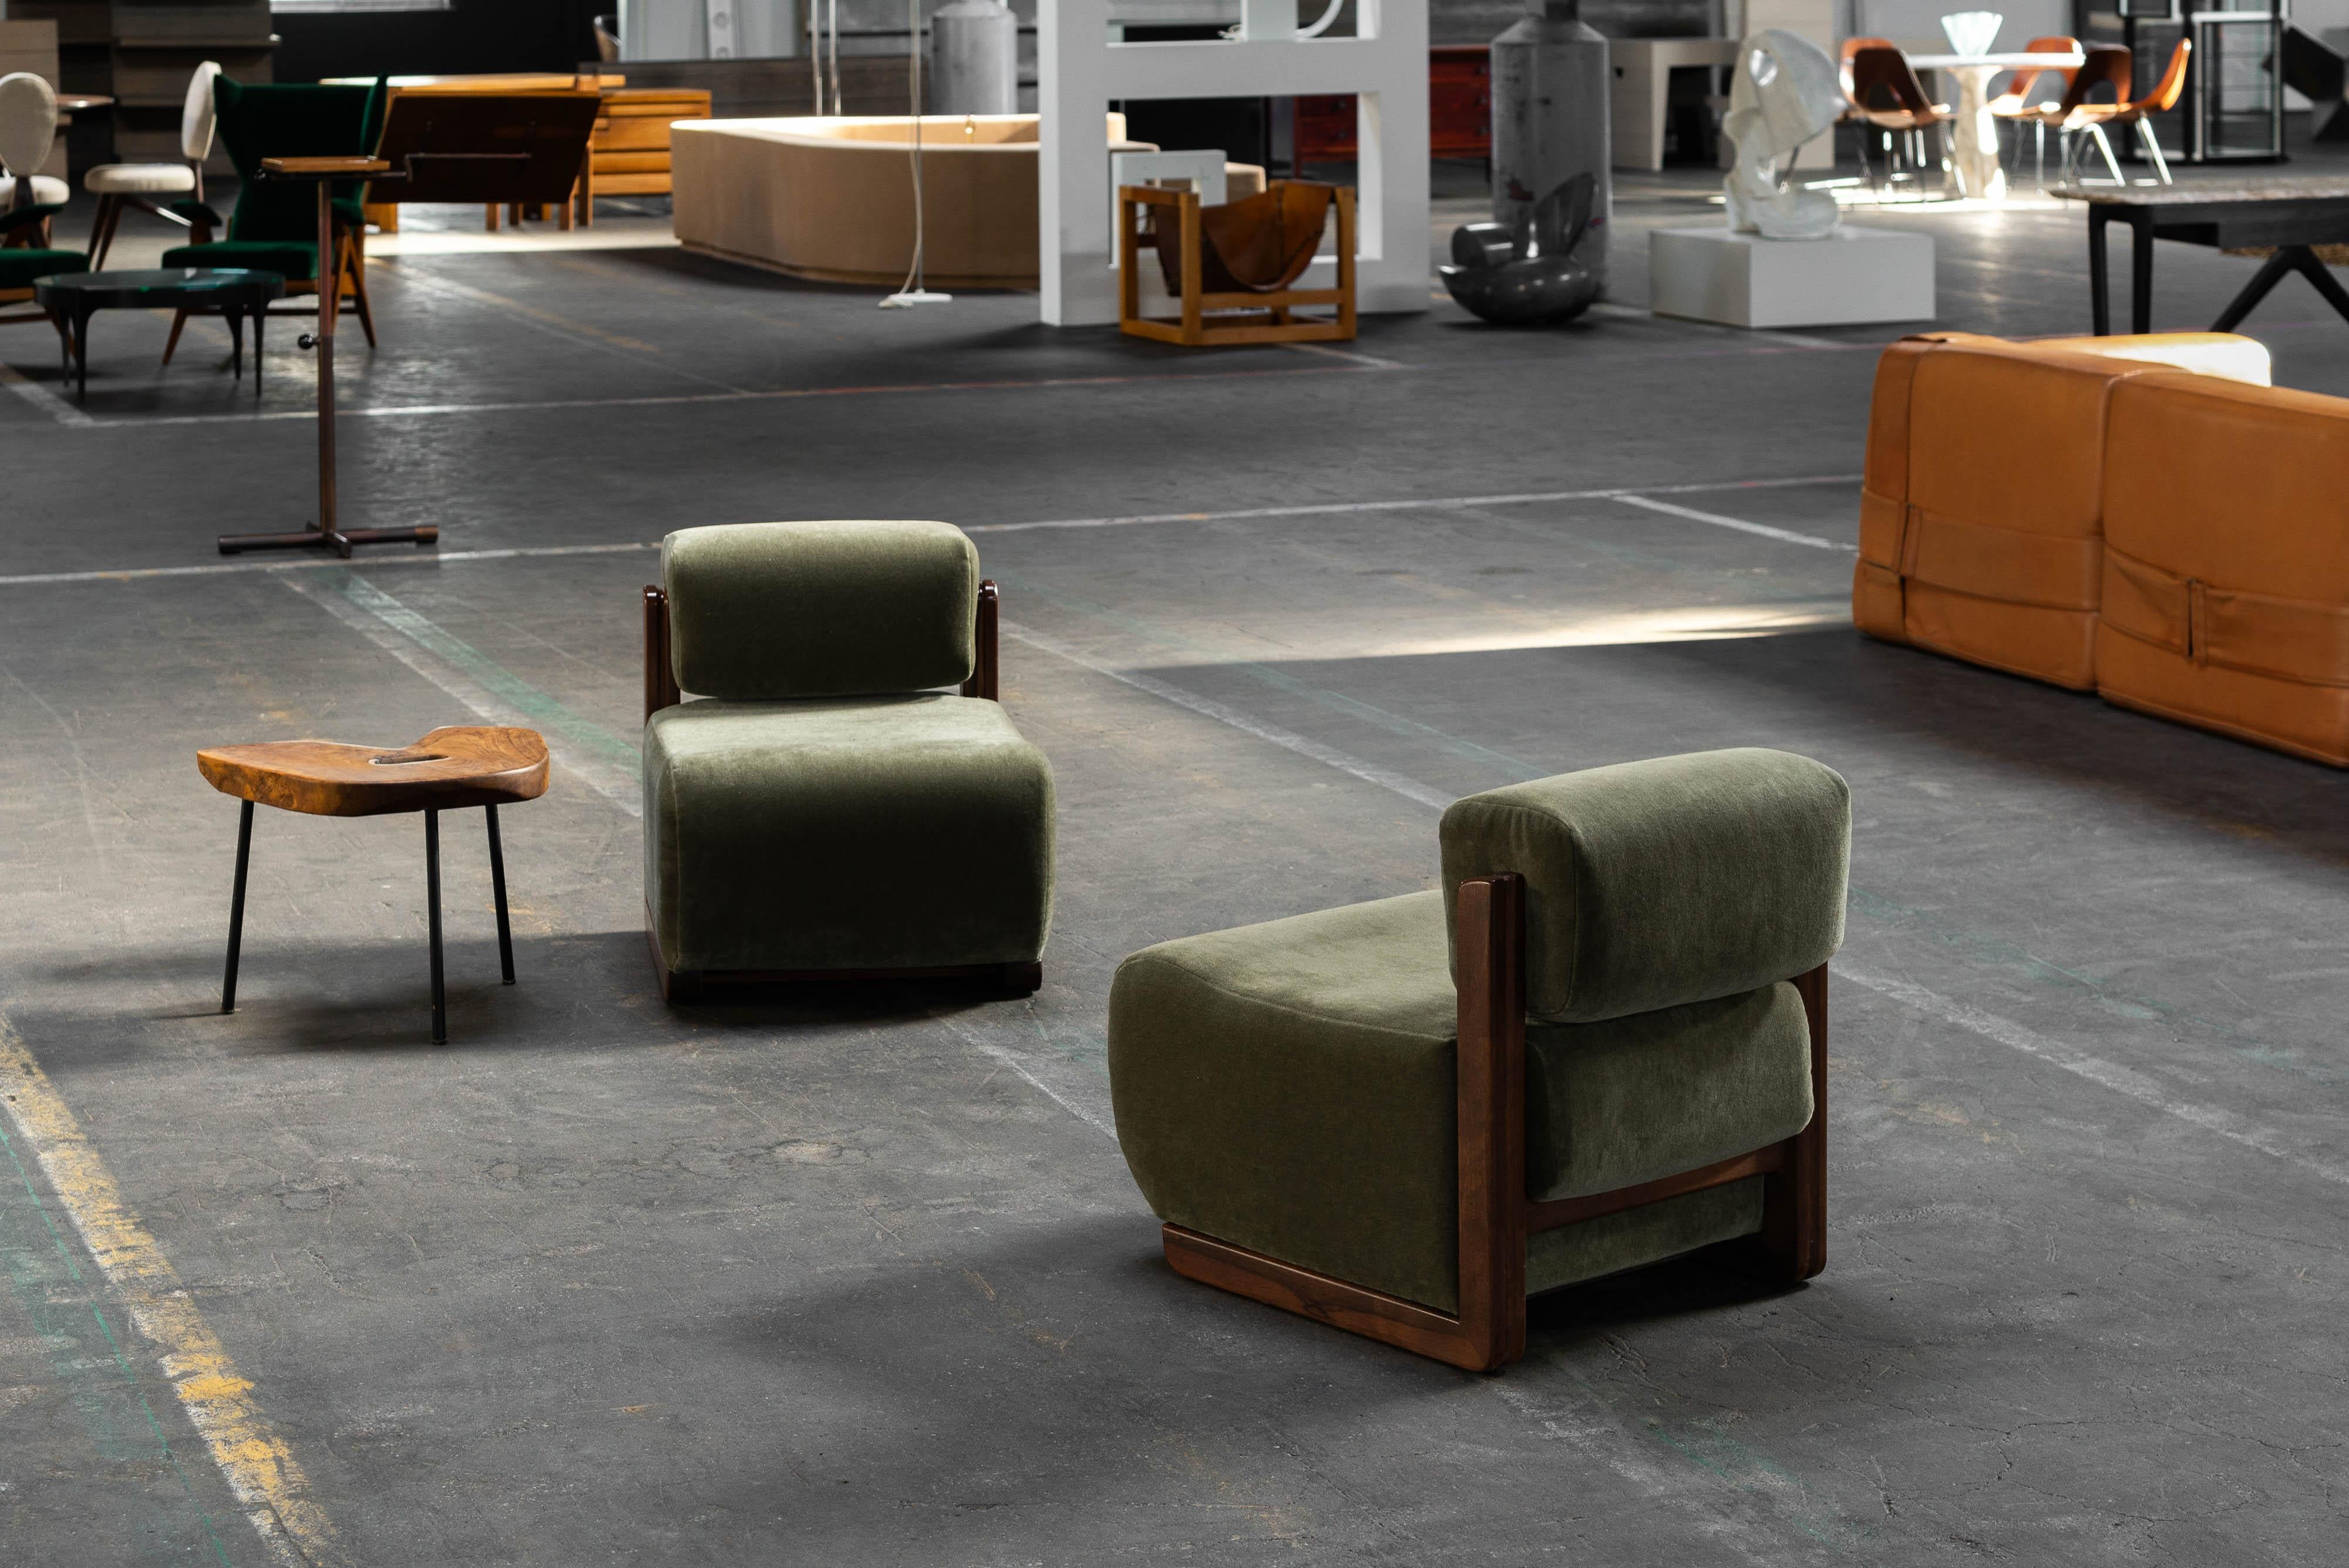 Fantastique ensemble de 2 chaises club, ou chaises de chambre, fabriquées par un designer ou fabricant inconnu en Italie dans les années 1950. Ils sont parfaits pour votre chambre à coucher ou tout autre endroit confortable. Ces chaises sont dotées